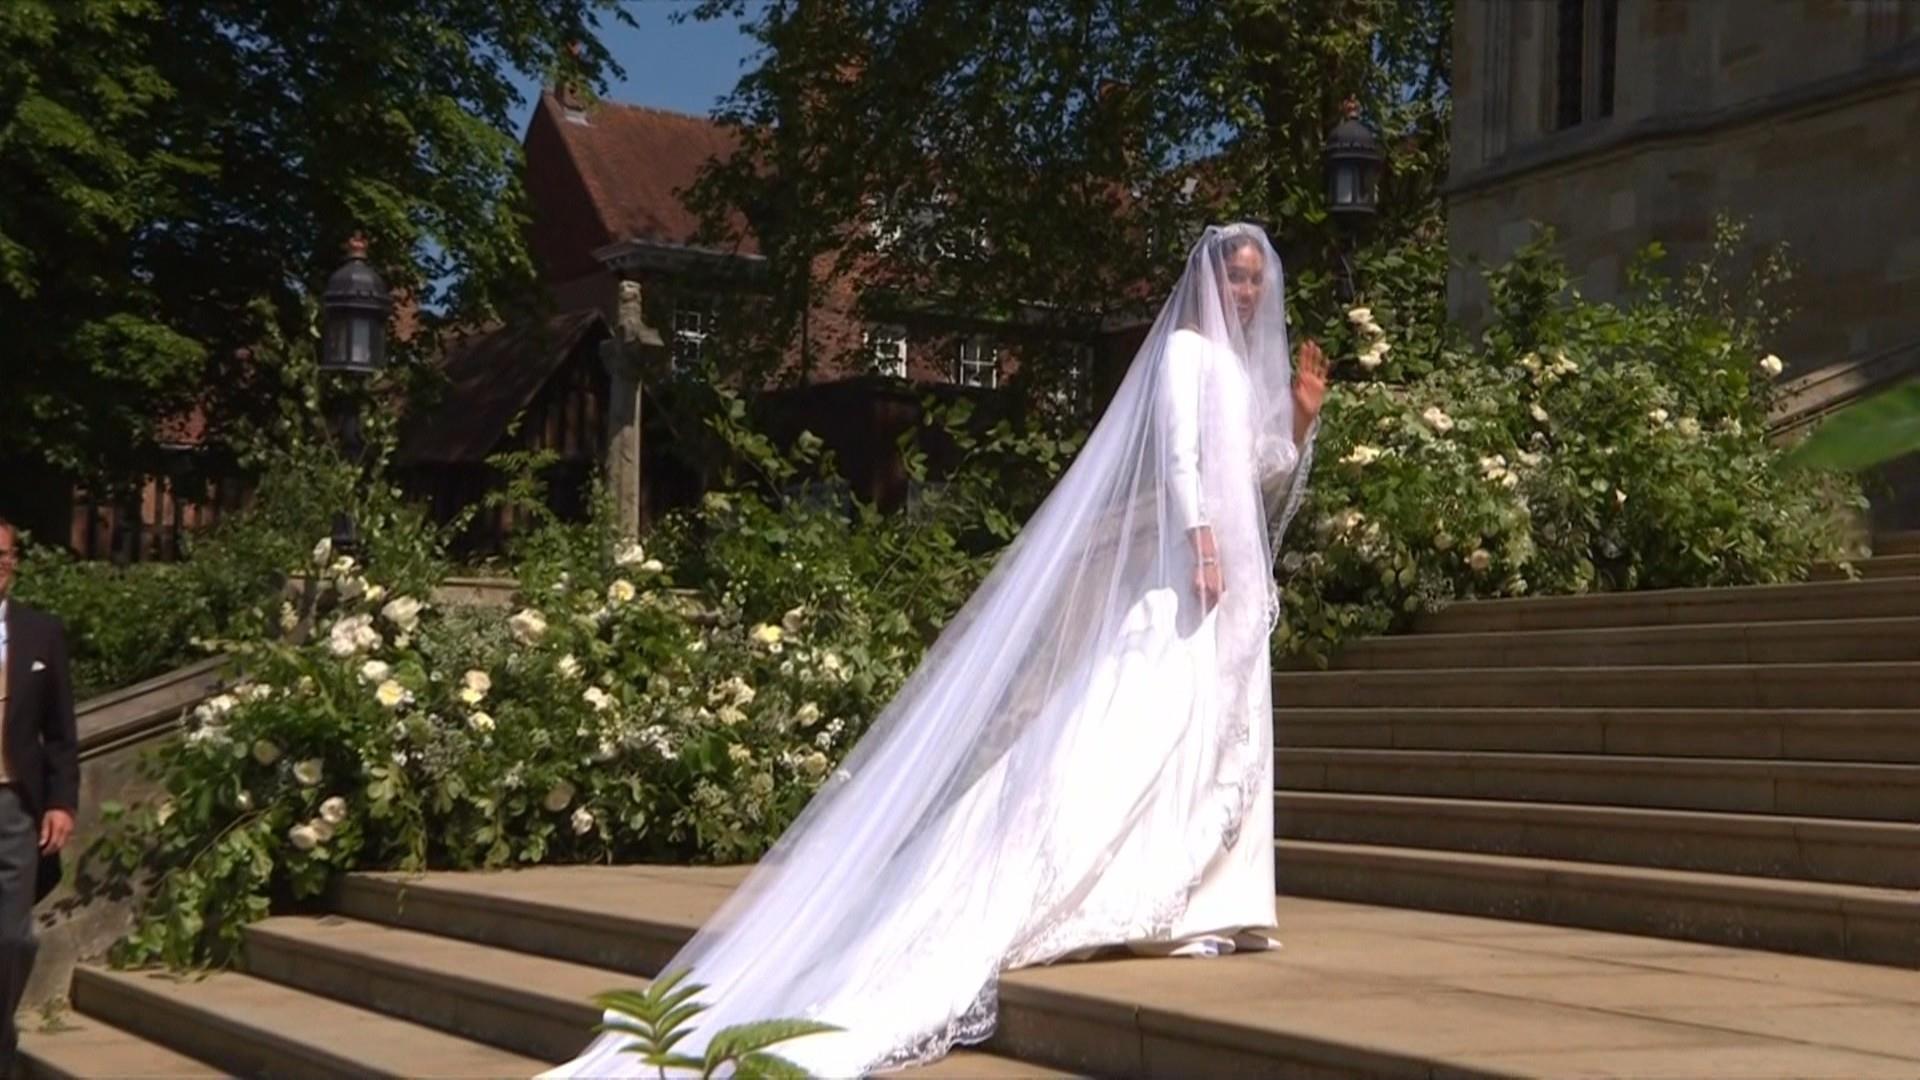 Meghan Markle's wedding dress by Clare Waight Keller